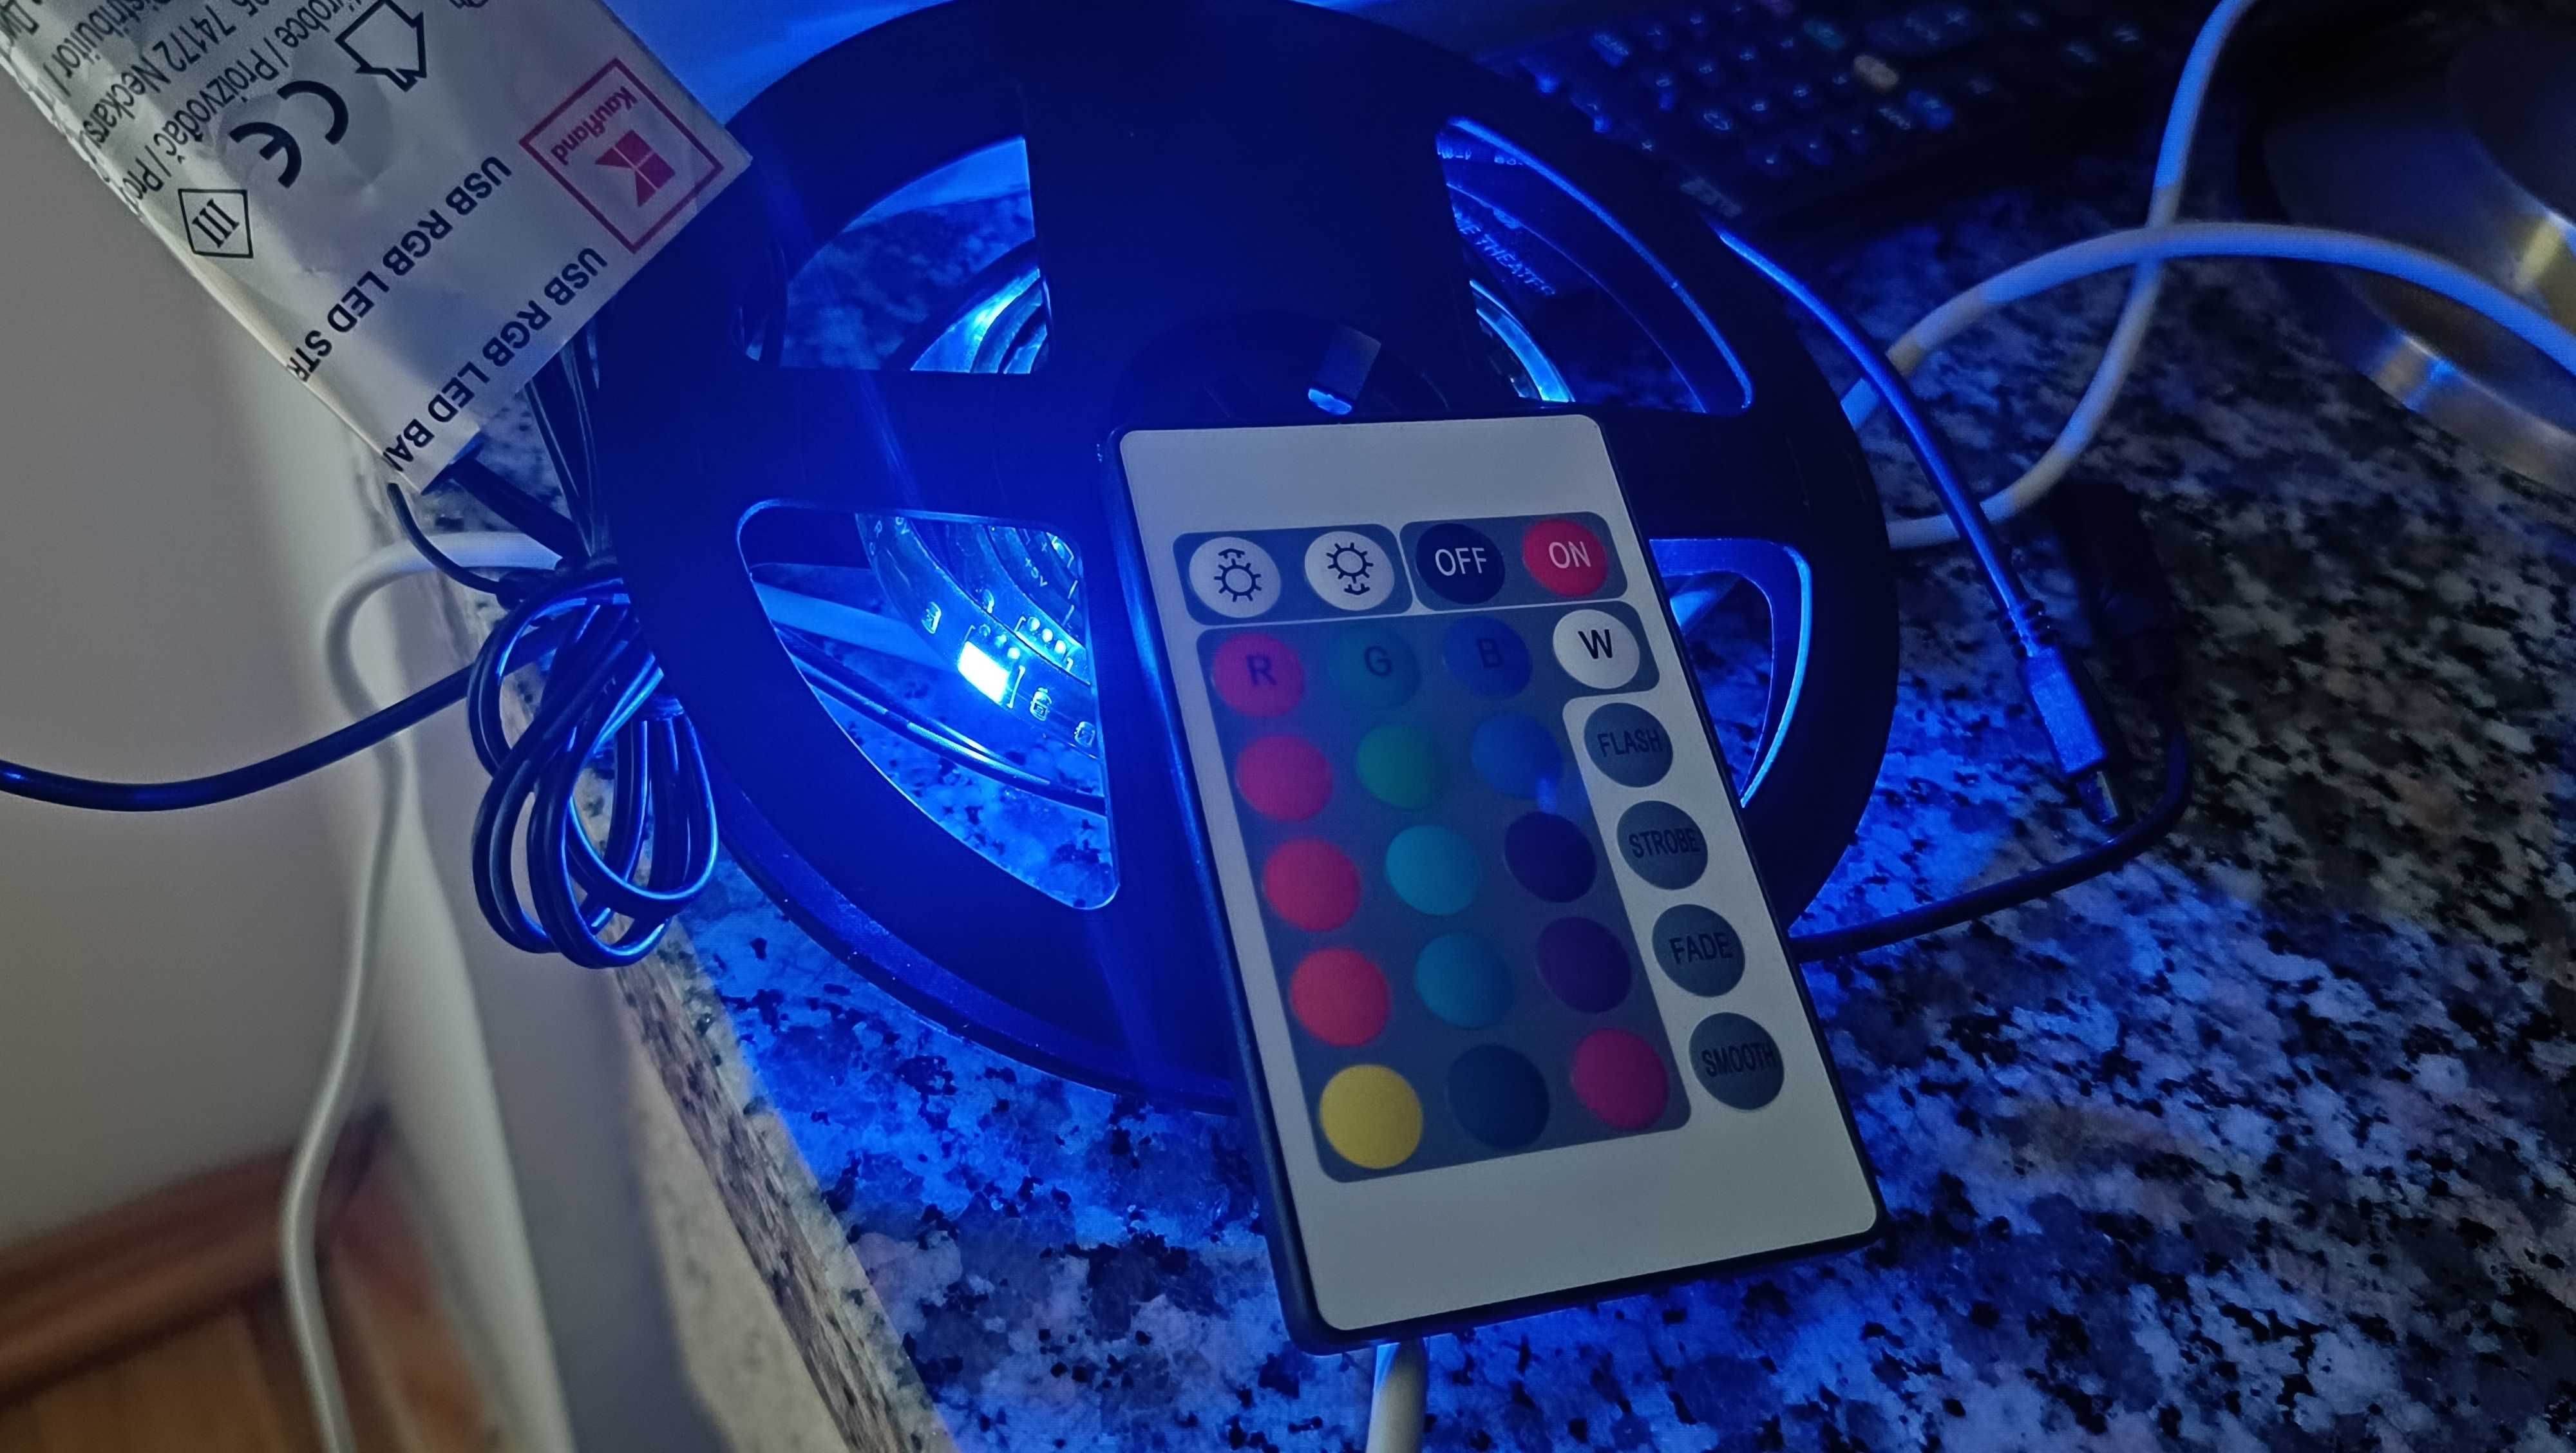 LED taśma przylepna RGB z pilotem na 5V zasilanie z USB do telewizora